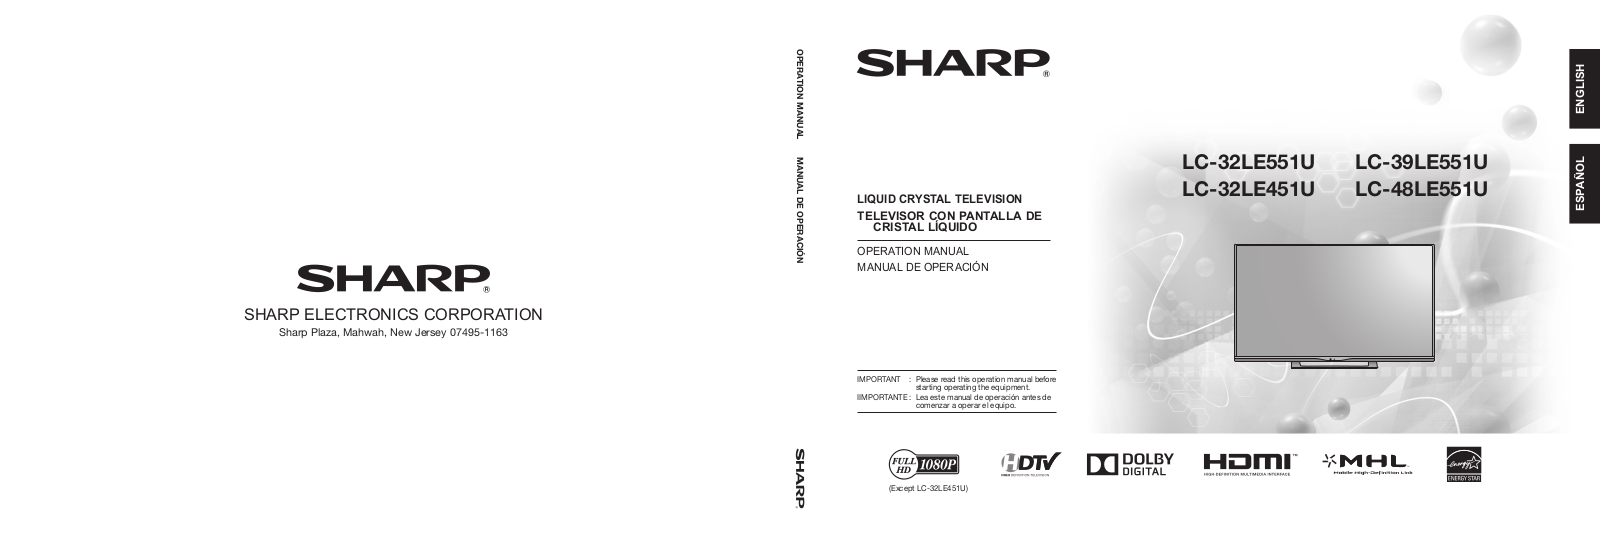 Sharp LC-39LE551U, LC-48LE551U, LC-32LE451U, LC-32LE551U User Manual